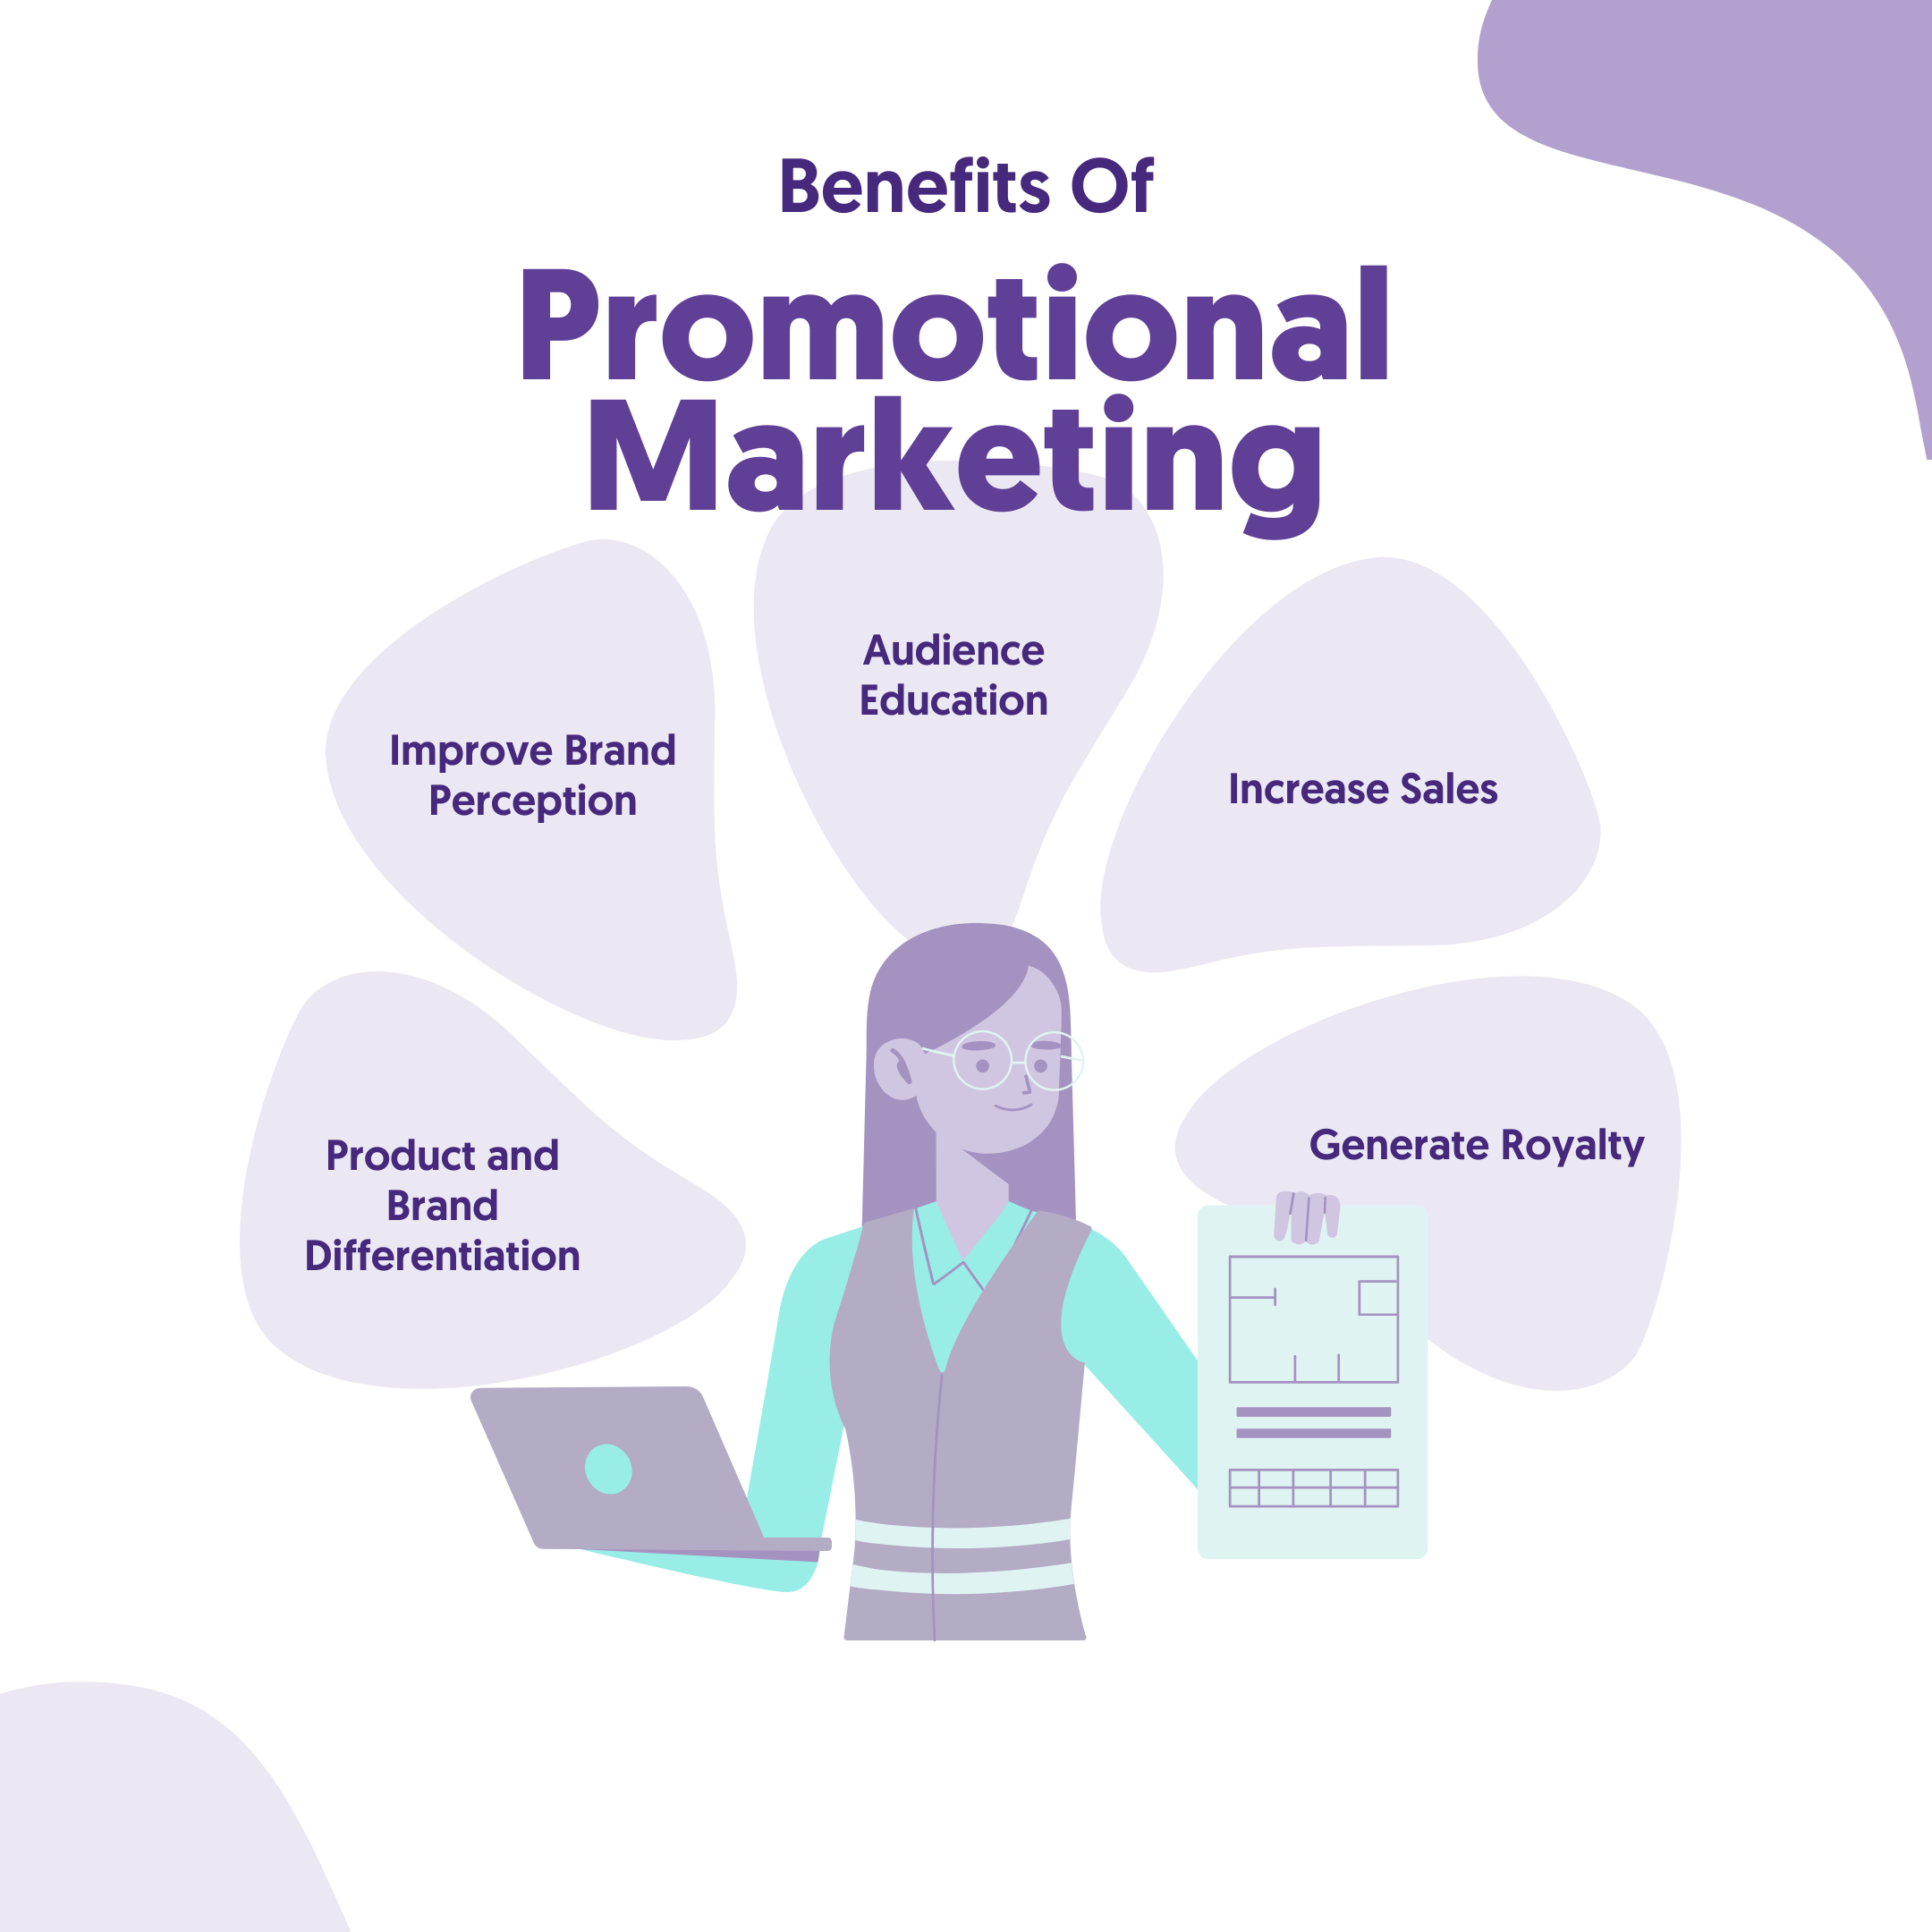 Promotional Marketing Benefits